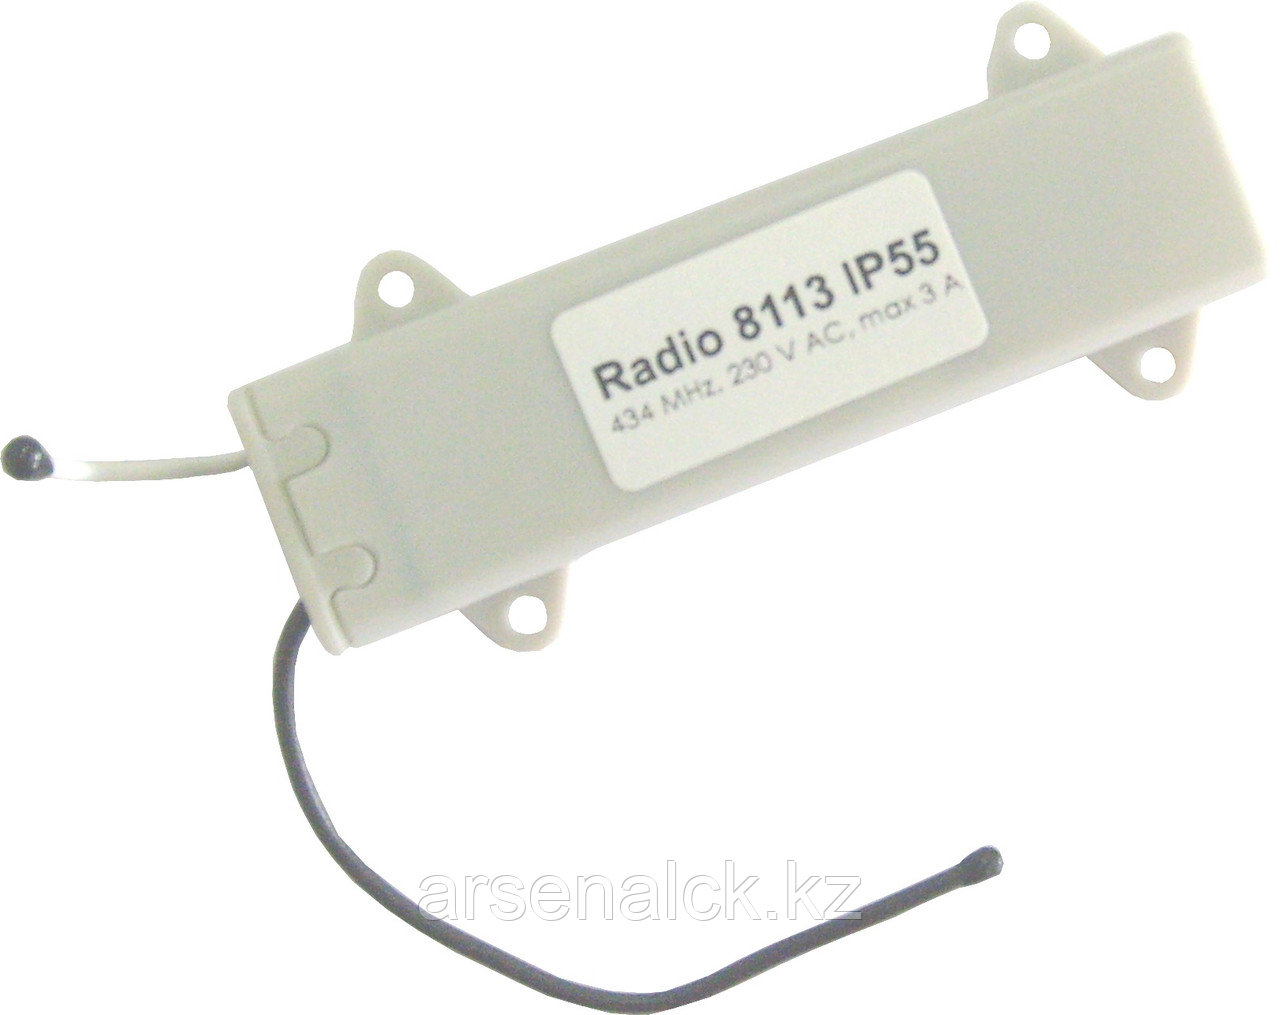 Радиоуправление одноканальное Radio 8113 IP55 в короб